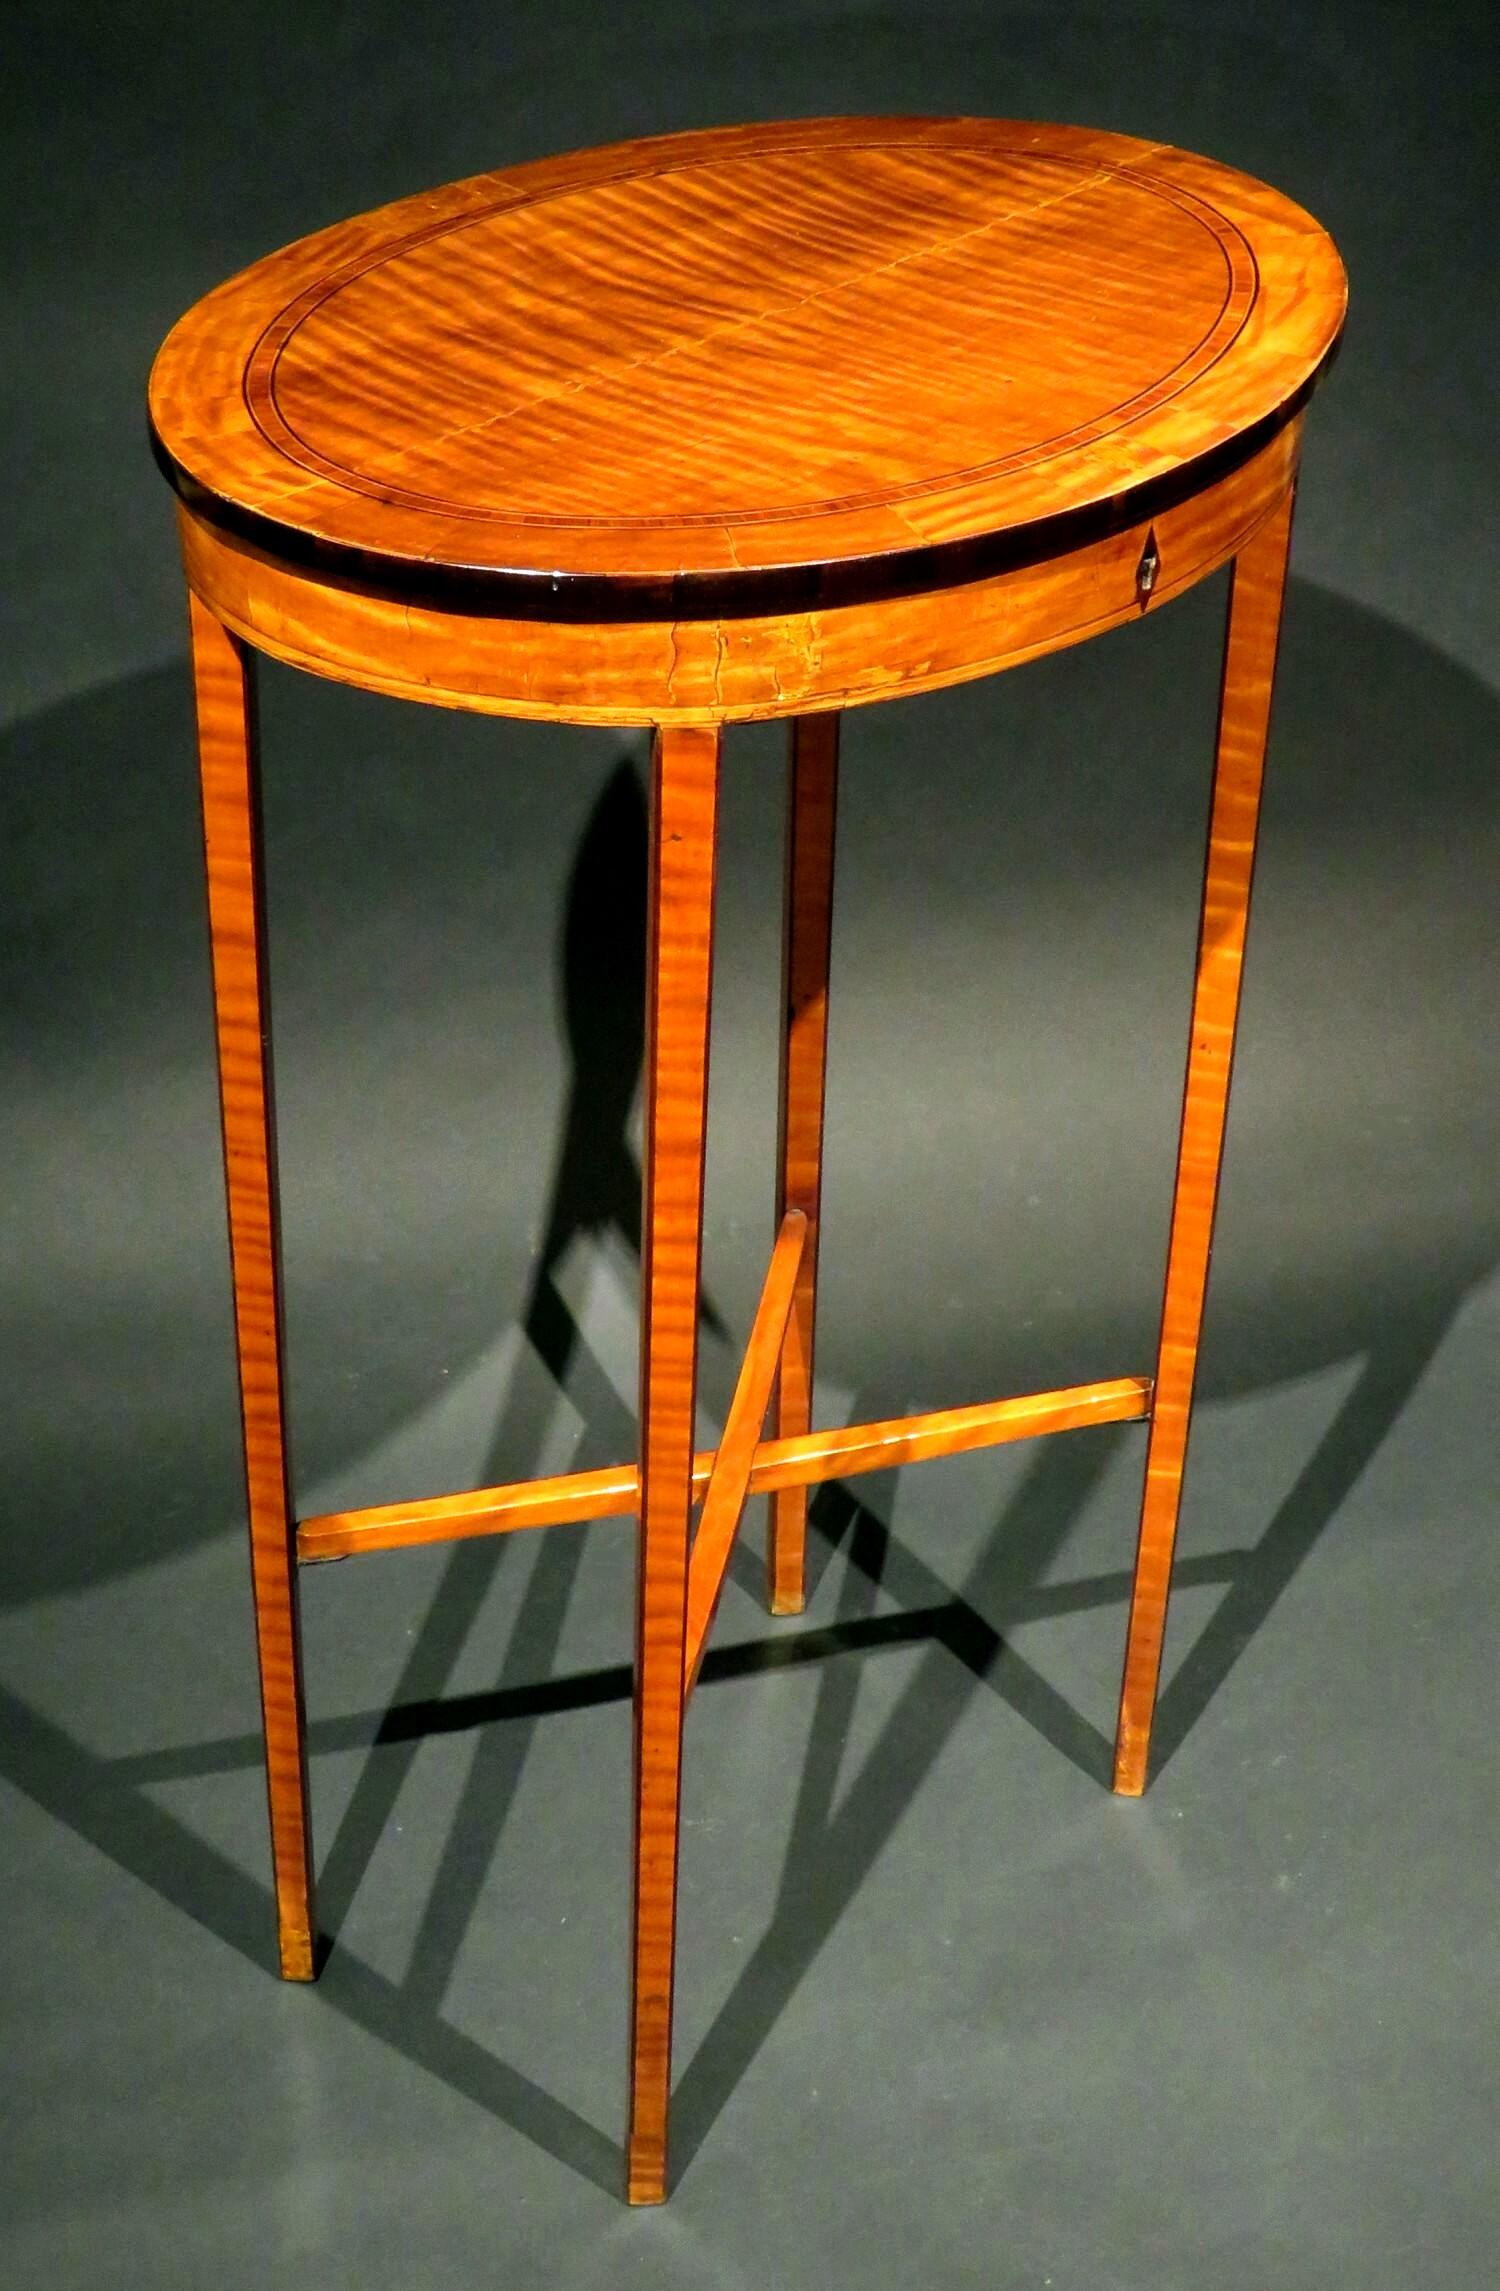 Une table de travail / table d'appoint en bois de satin très élégante et remarquable, présentant un plateau ovale richement figuré 